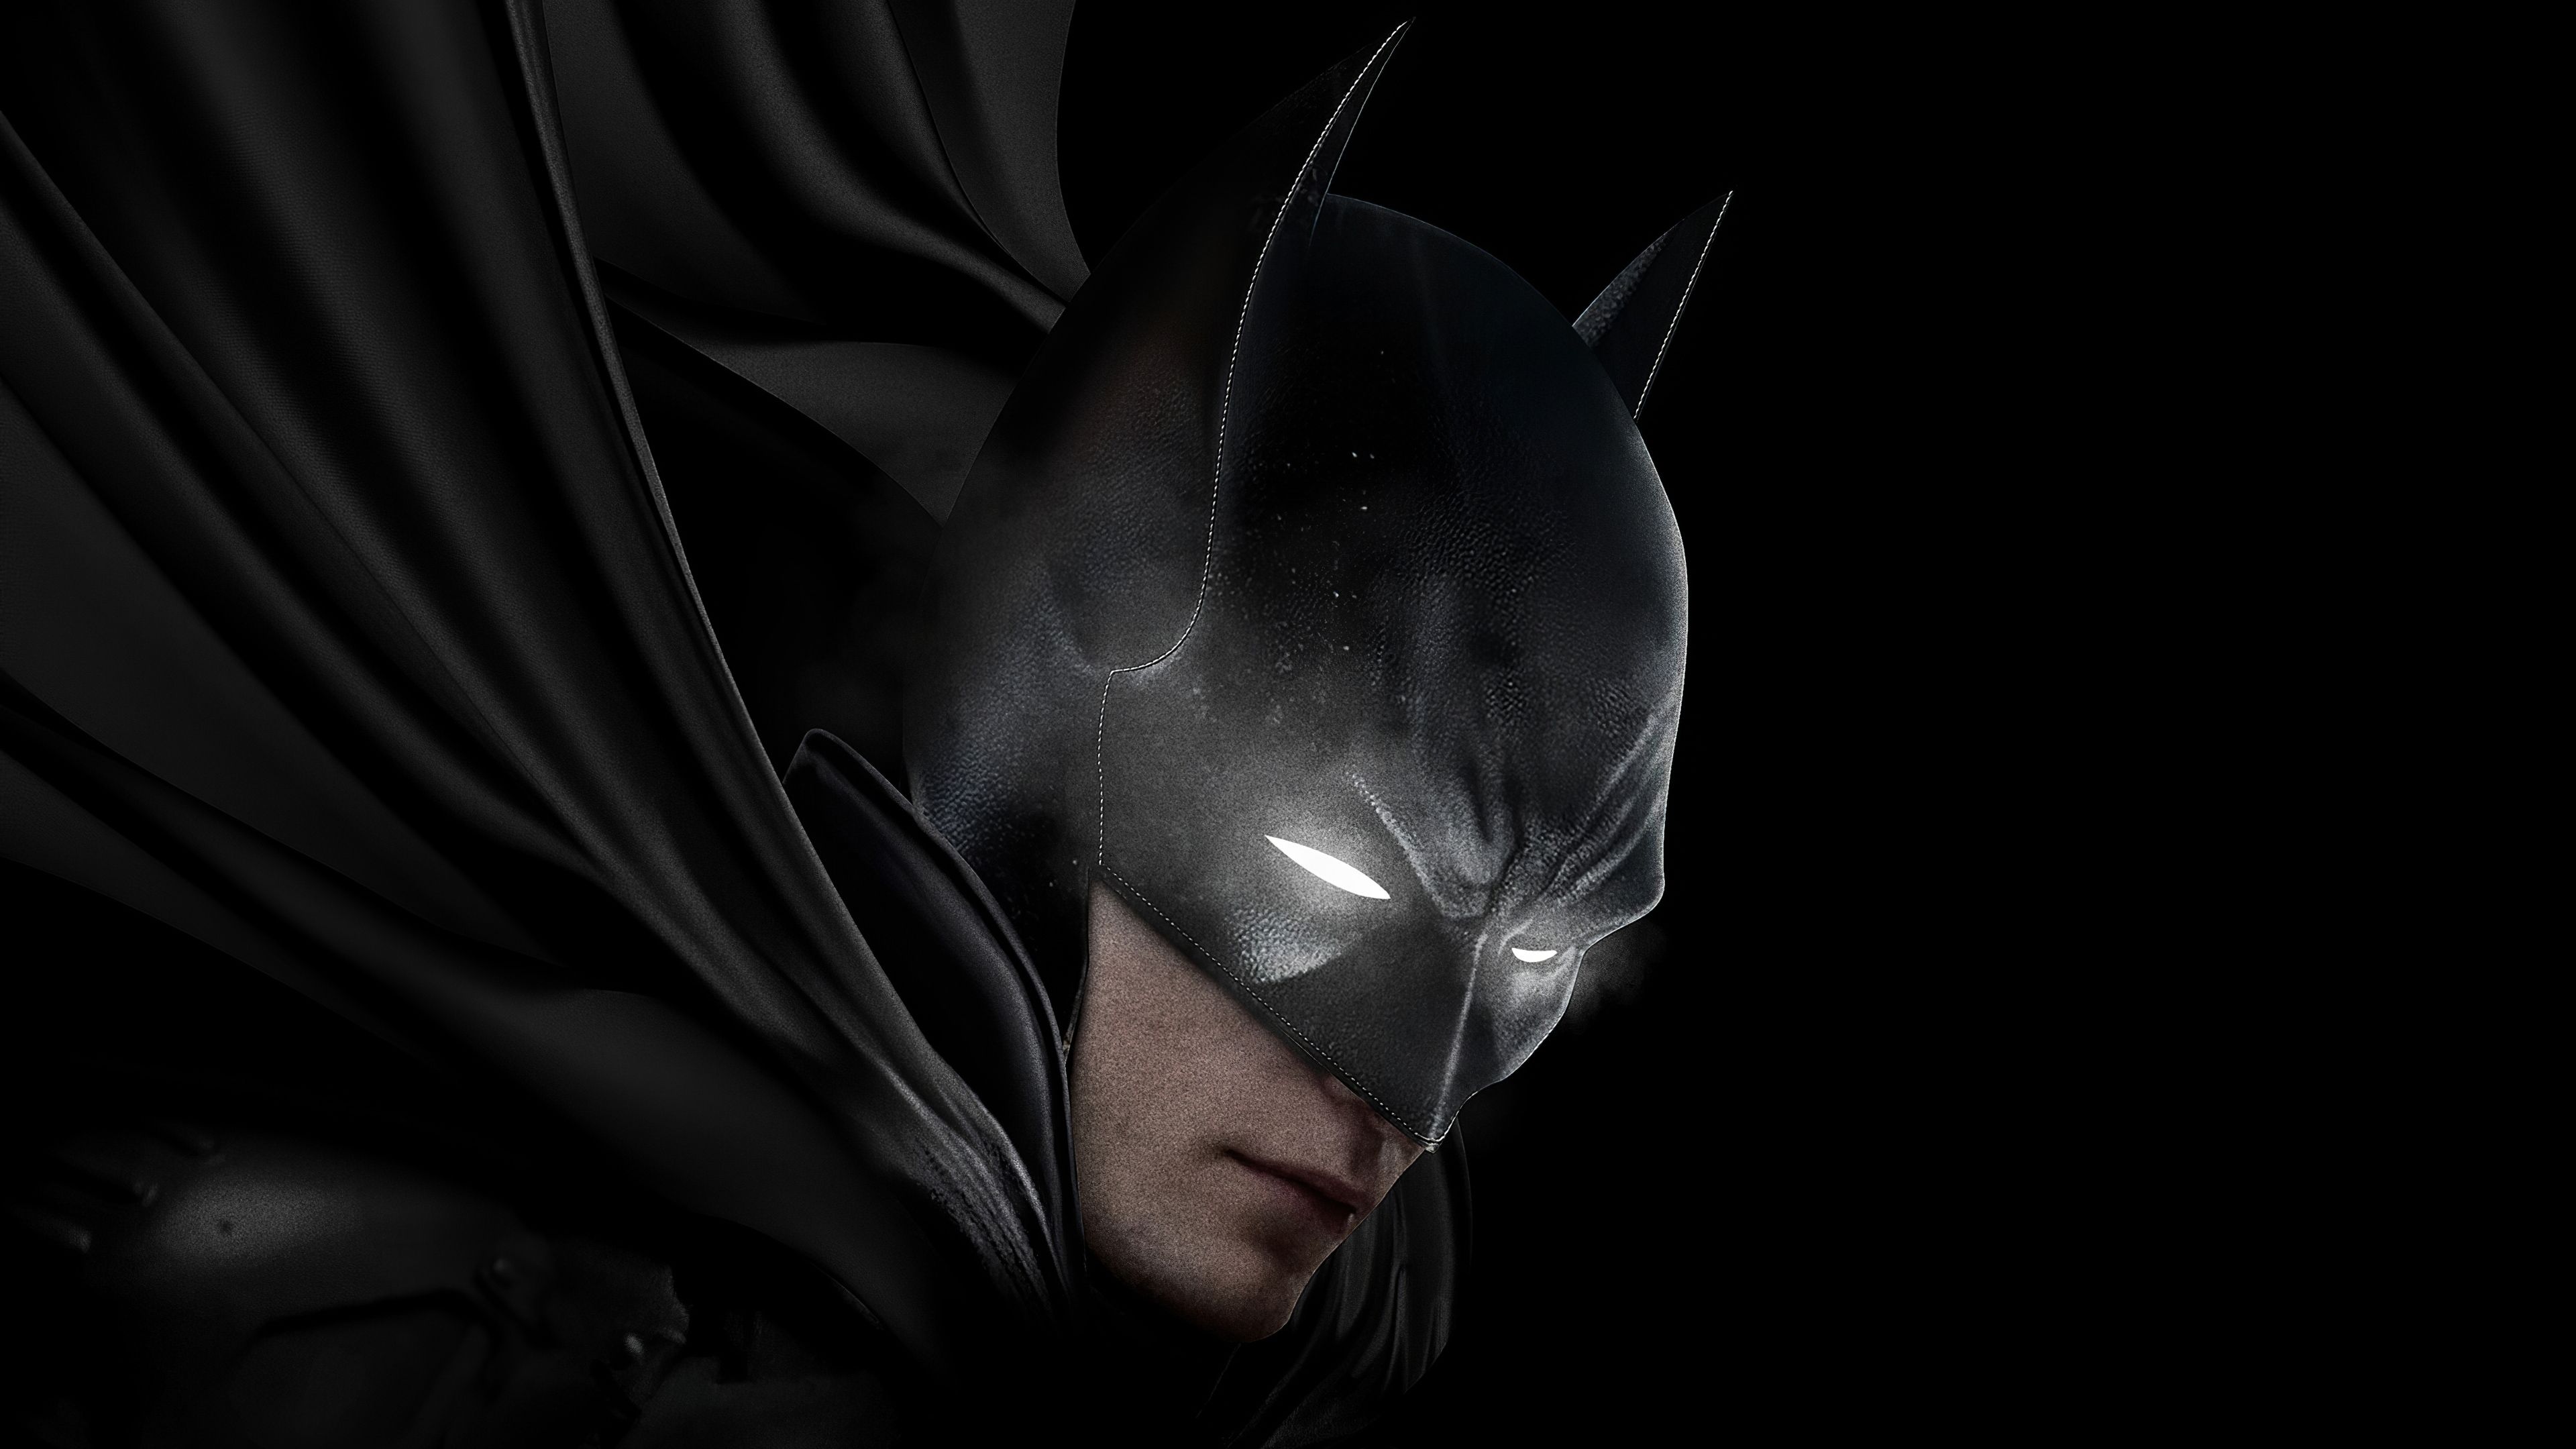 200+New Batman Wallpaper & 4k HD images